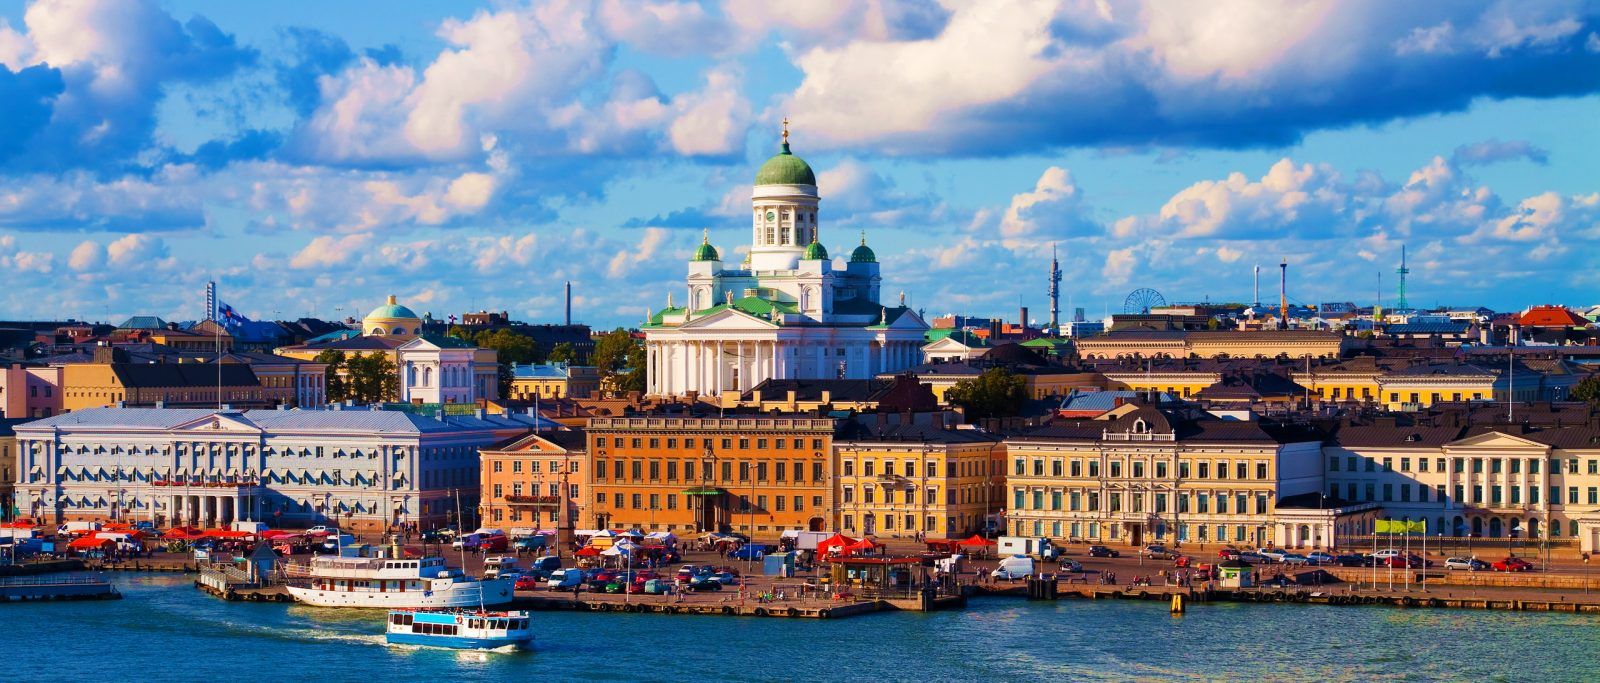 Хельсинки, столица Финляндии